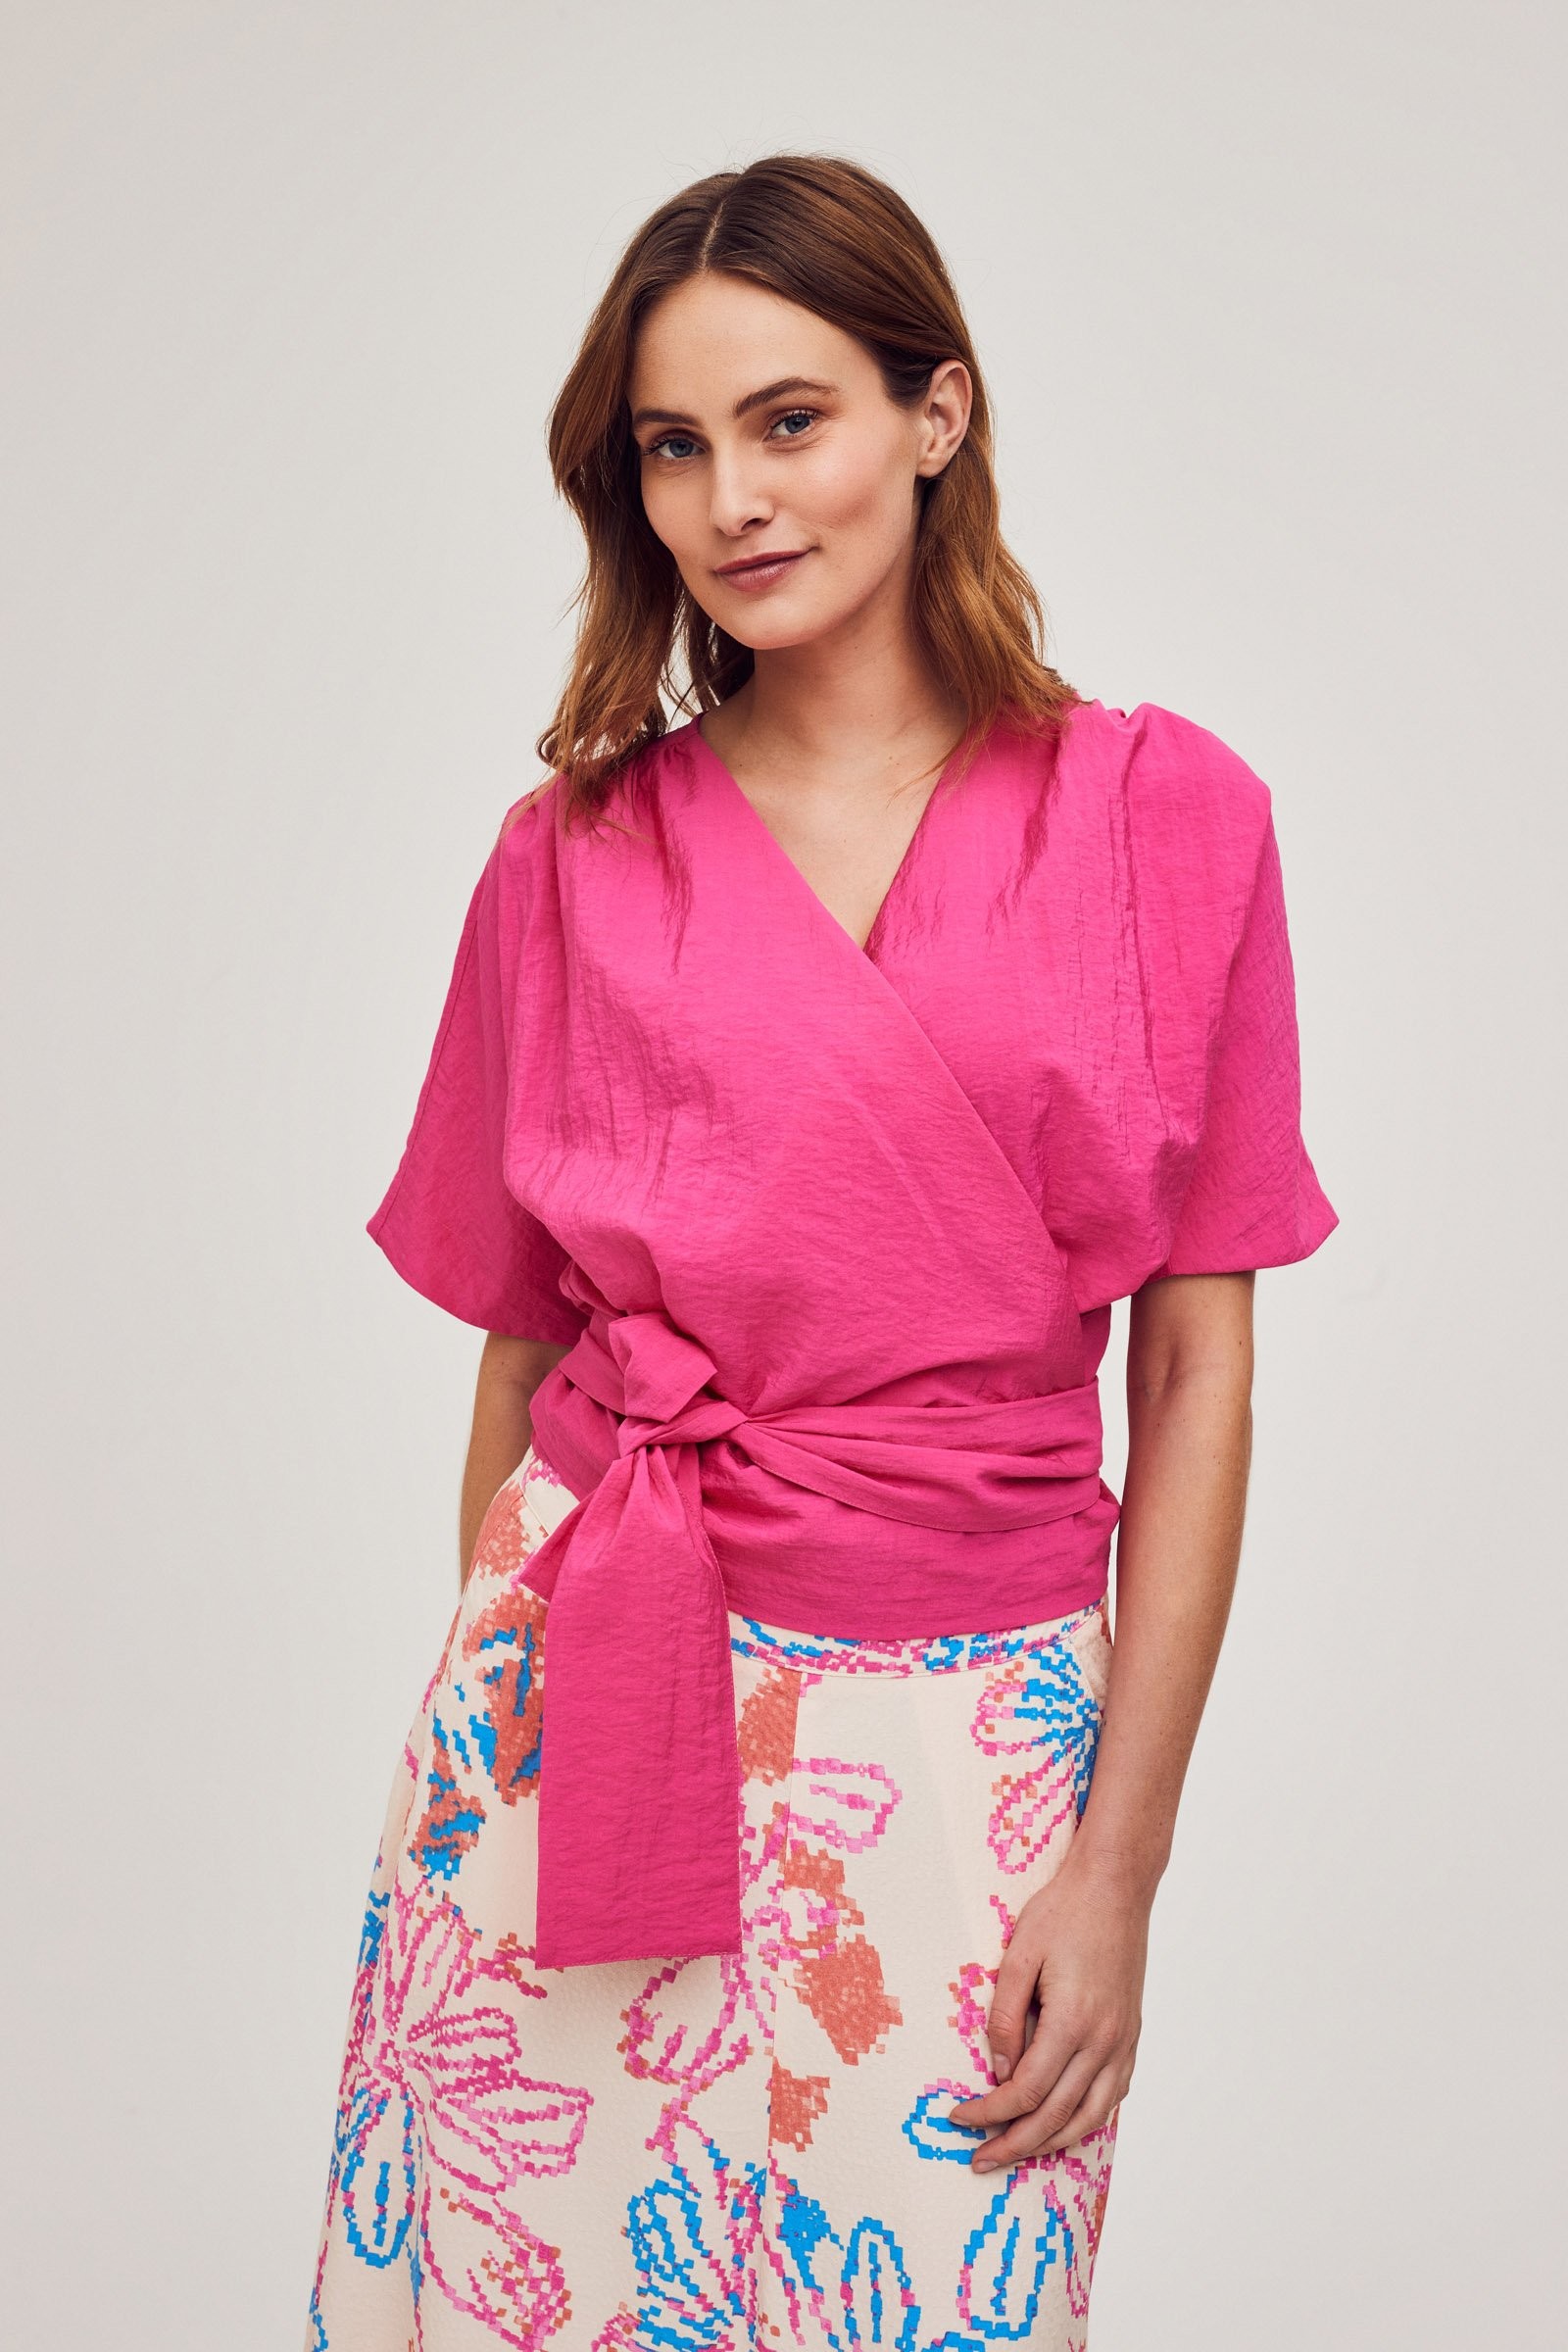 CKS Dames - IDIOMA - blouse korte mouwen - intens roze